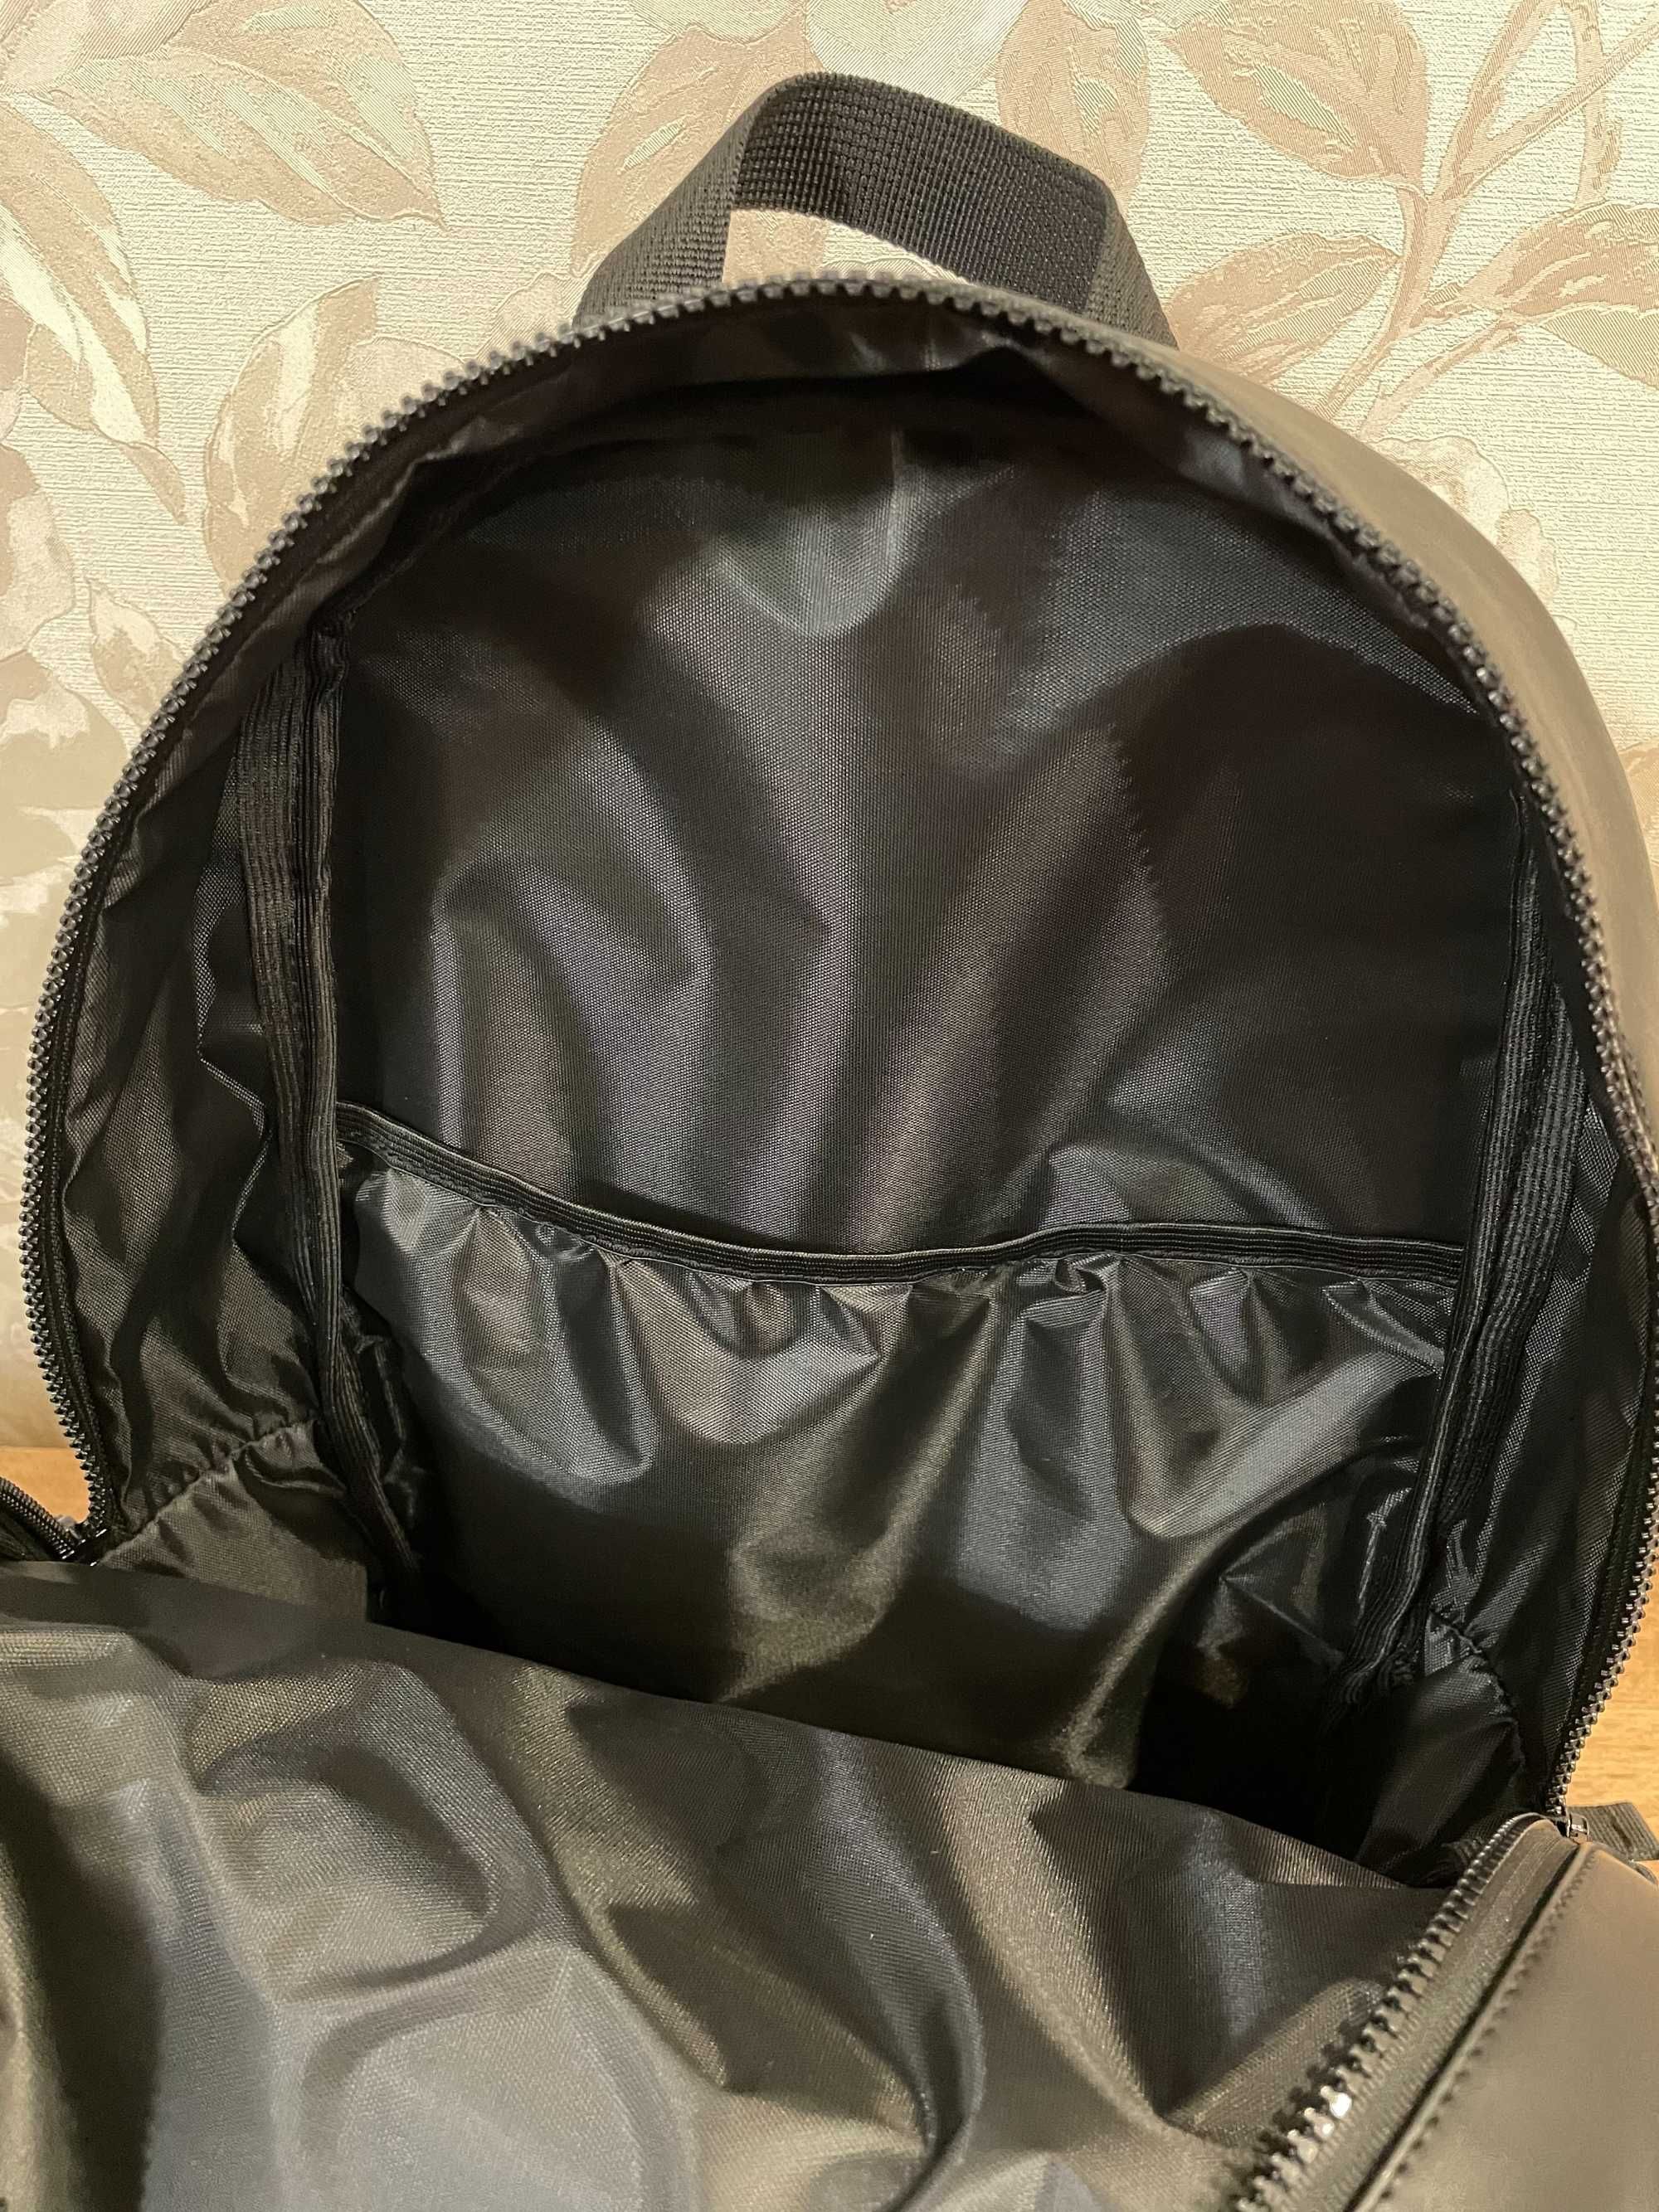 Базовый черный городской рюкзак CalvinKlein из гладкой эко-кожи кожзам